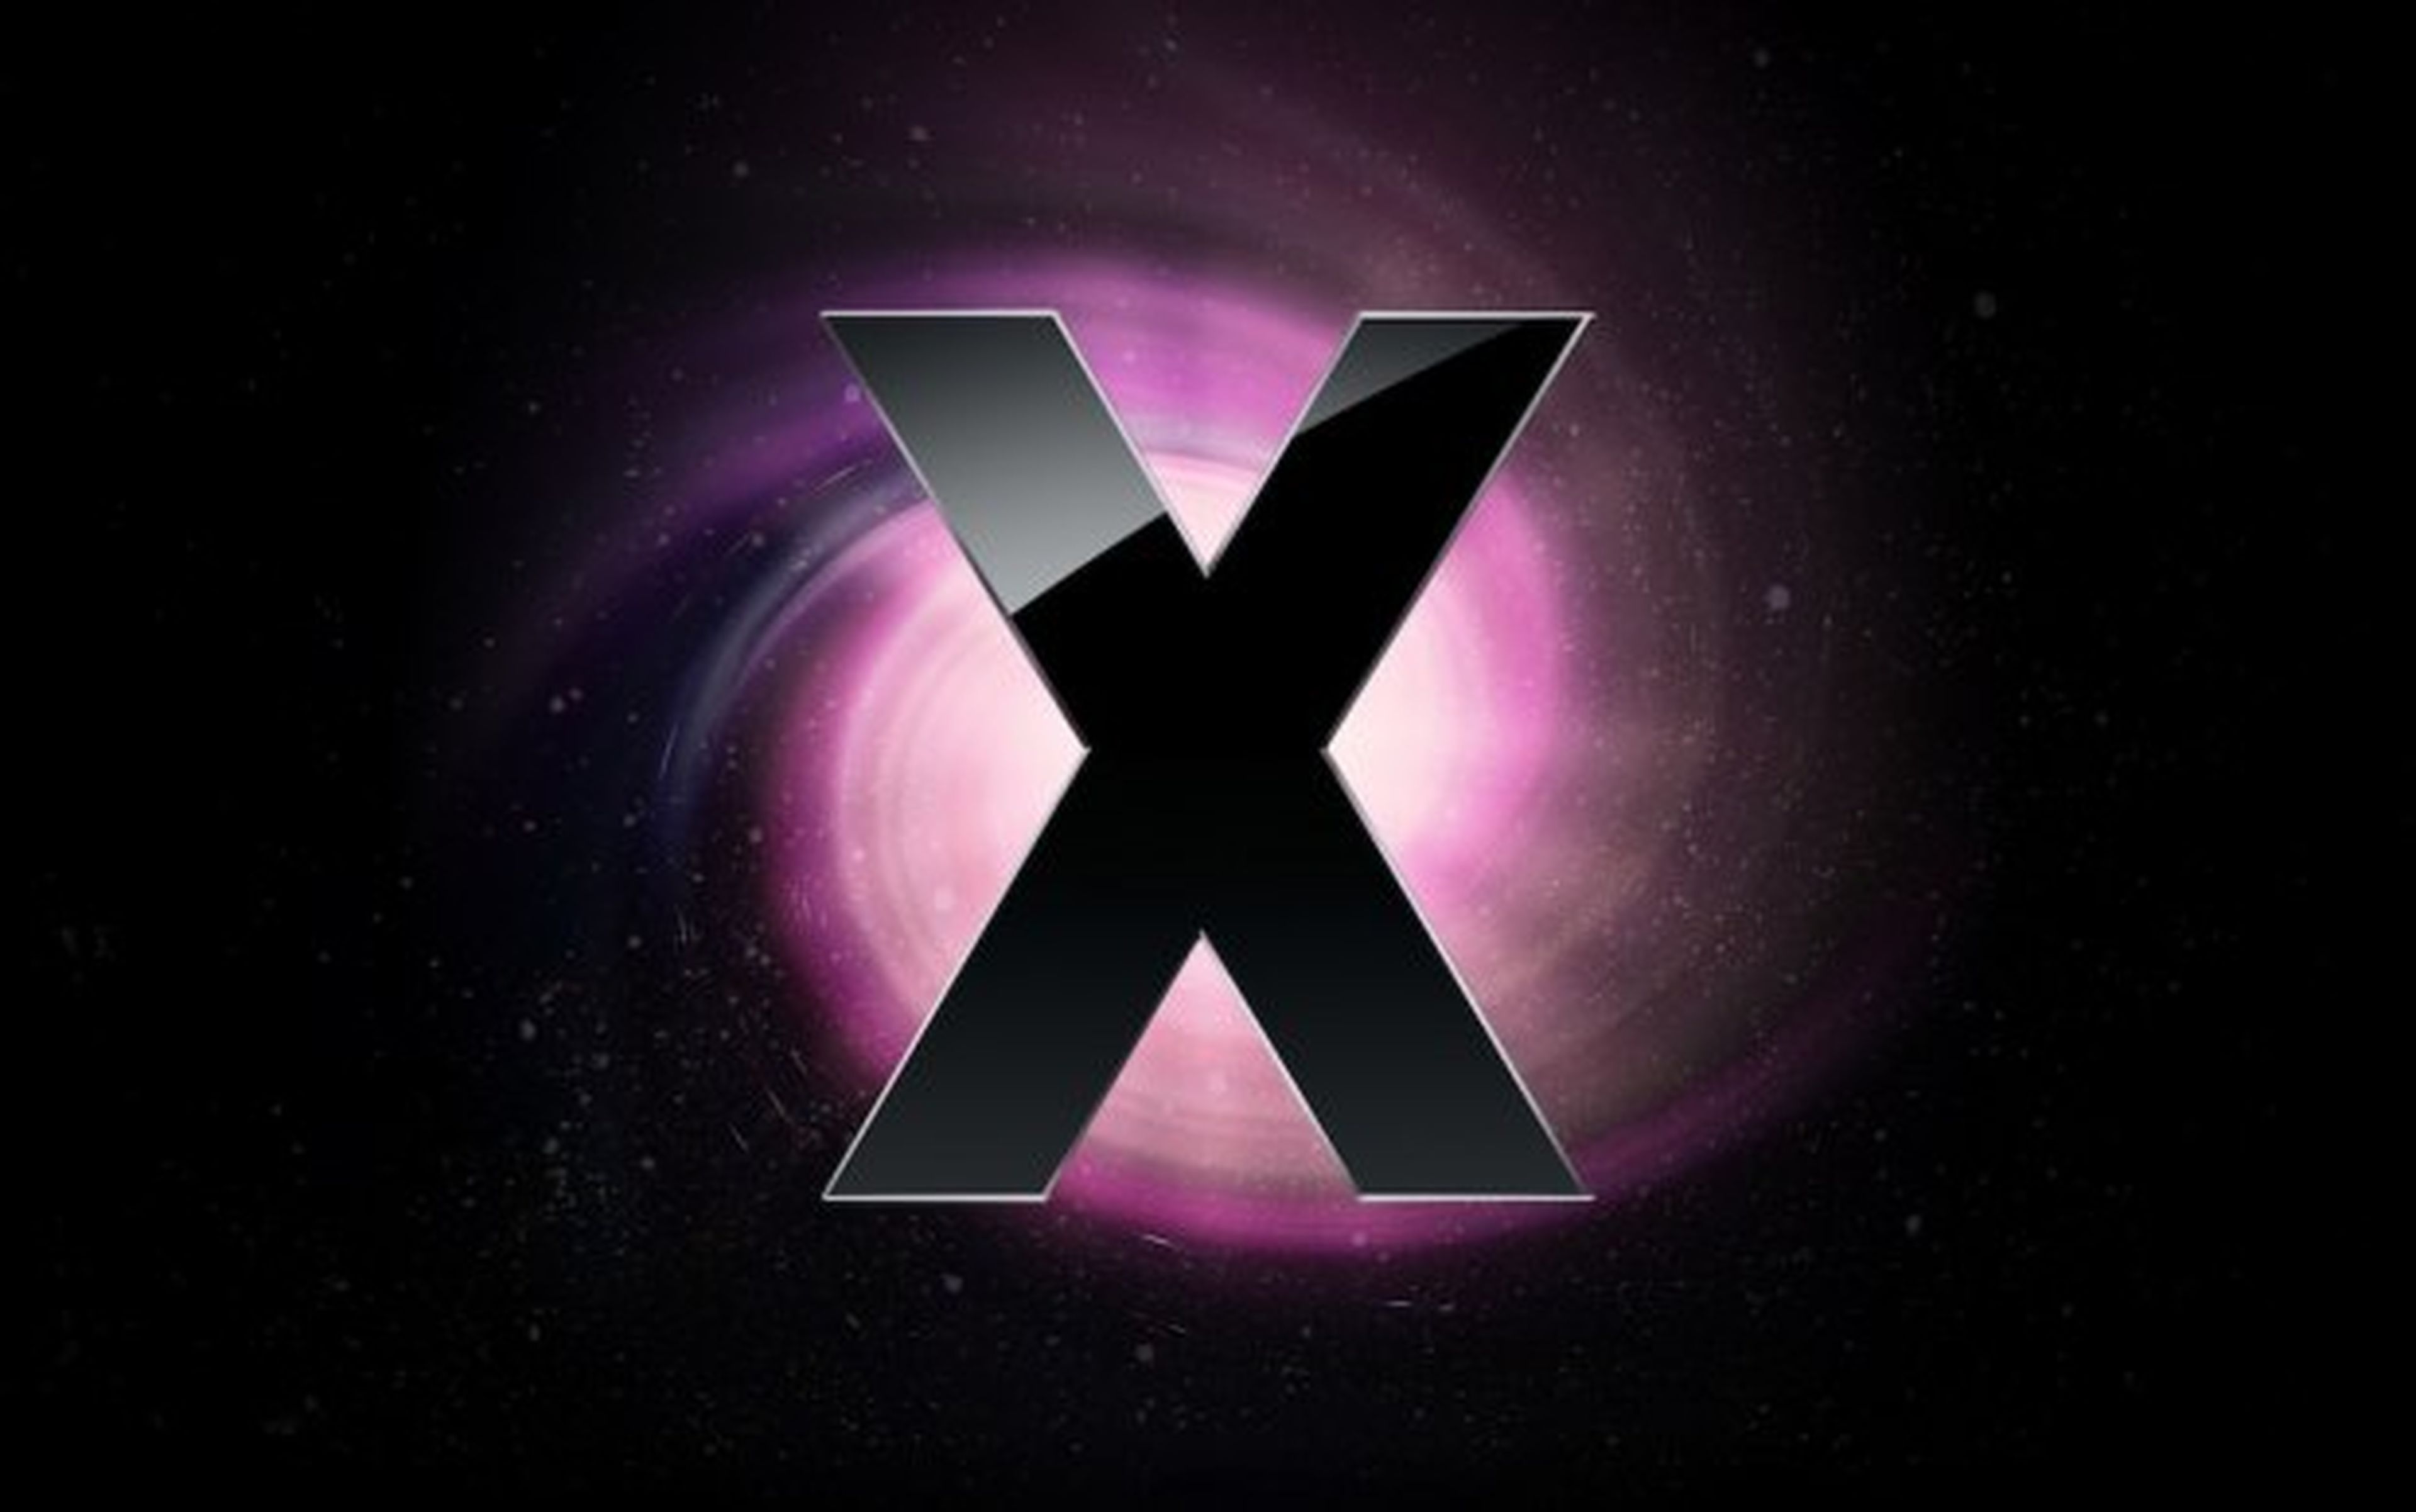 Mac OS X 10.9